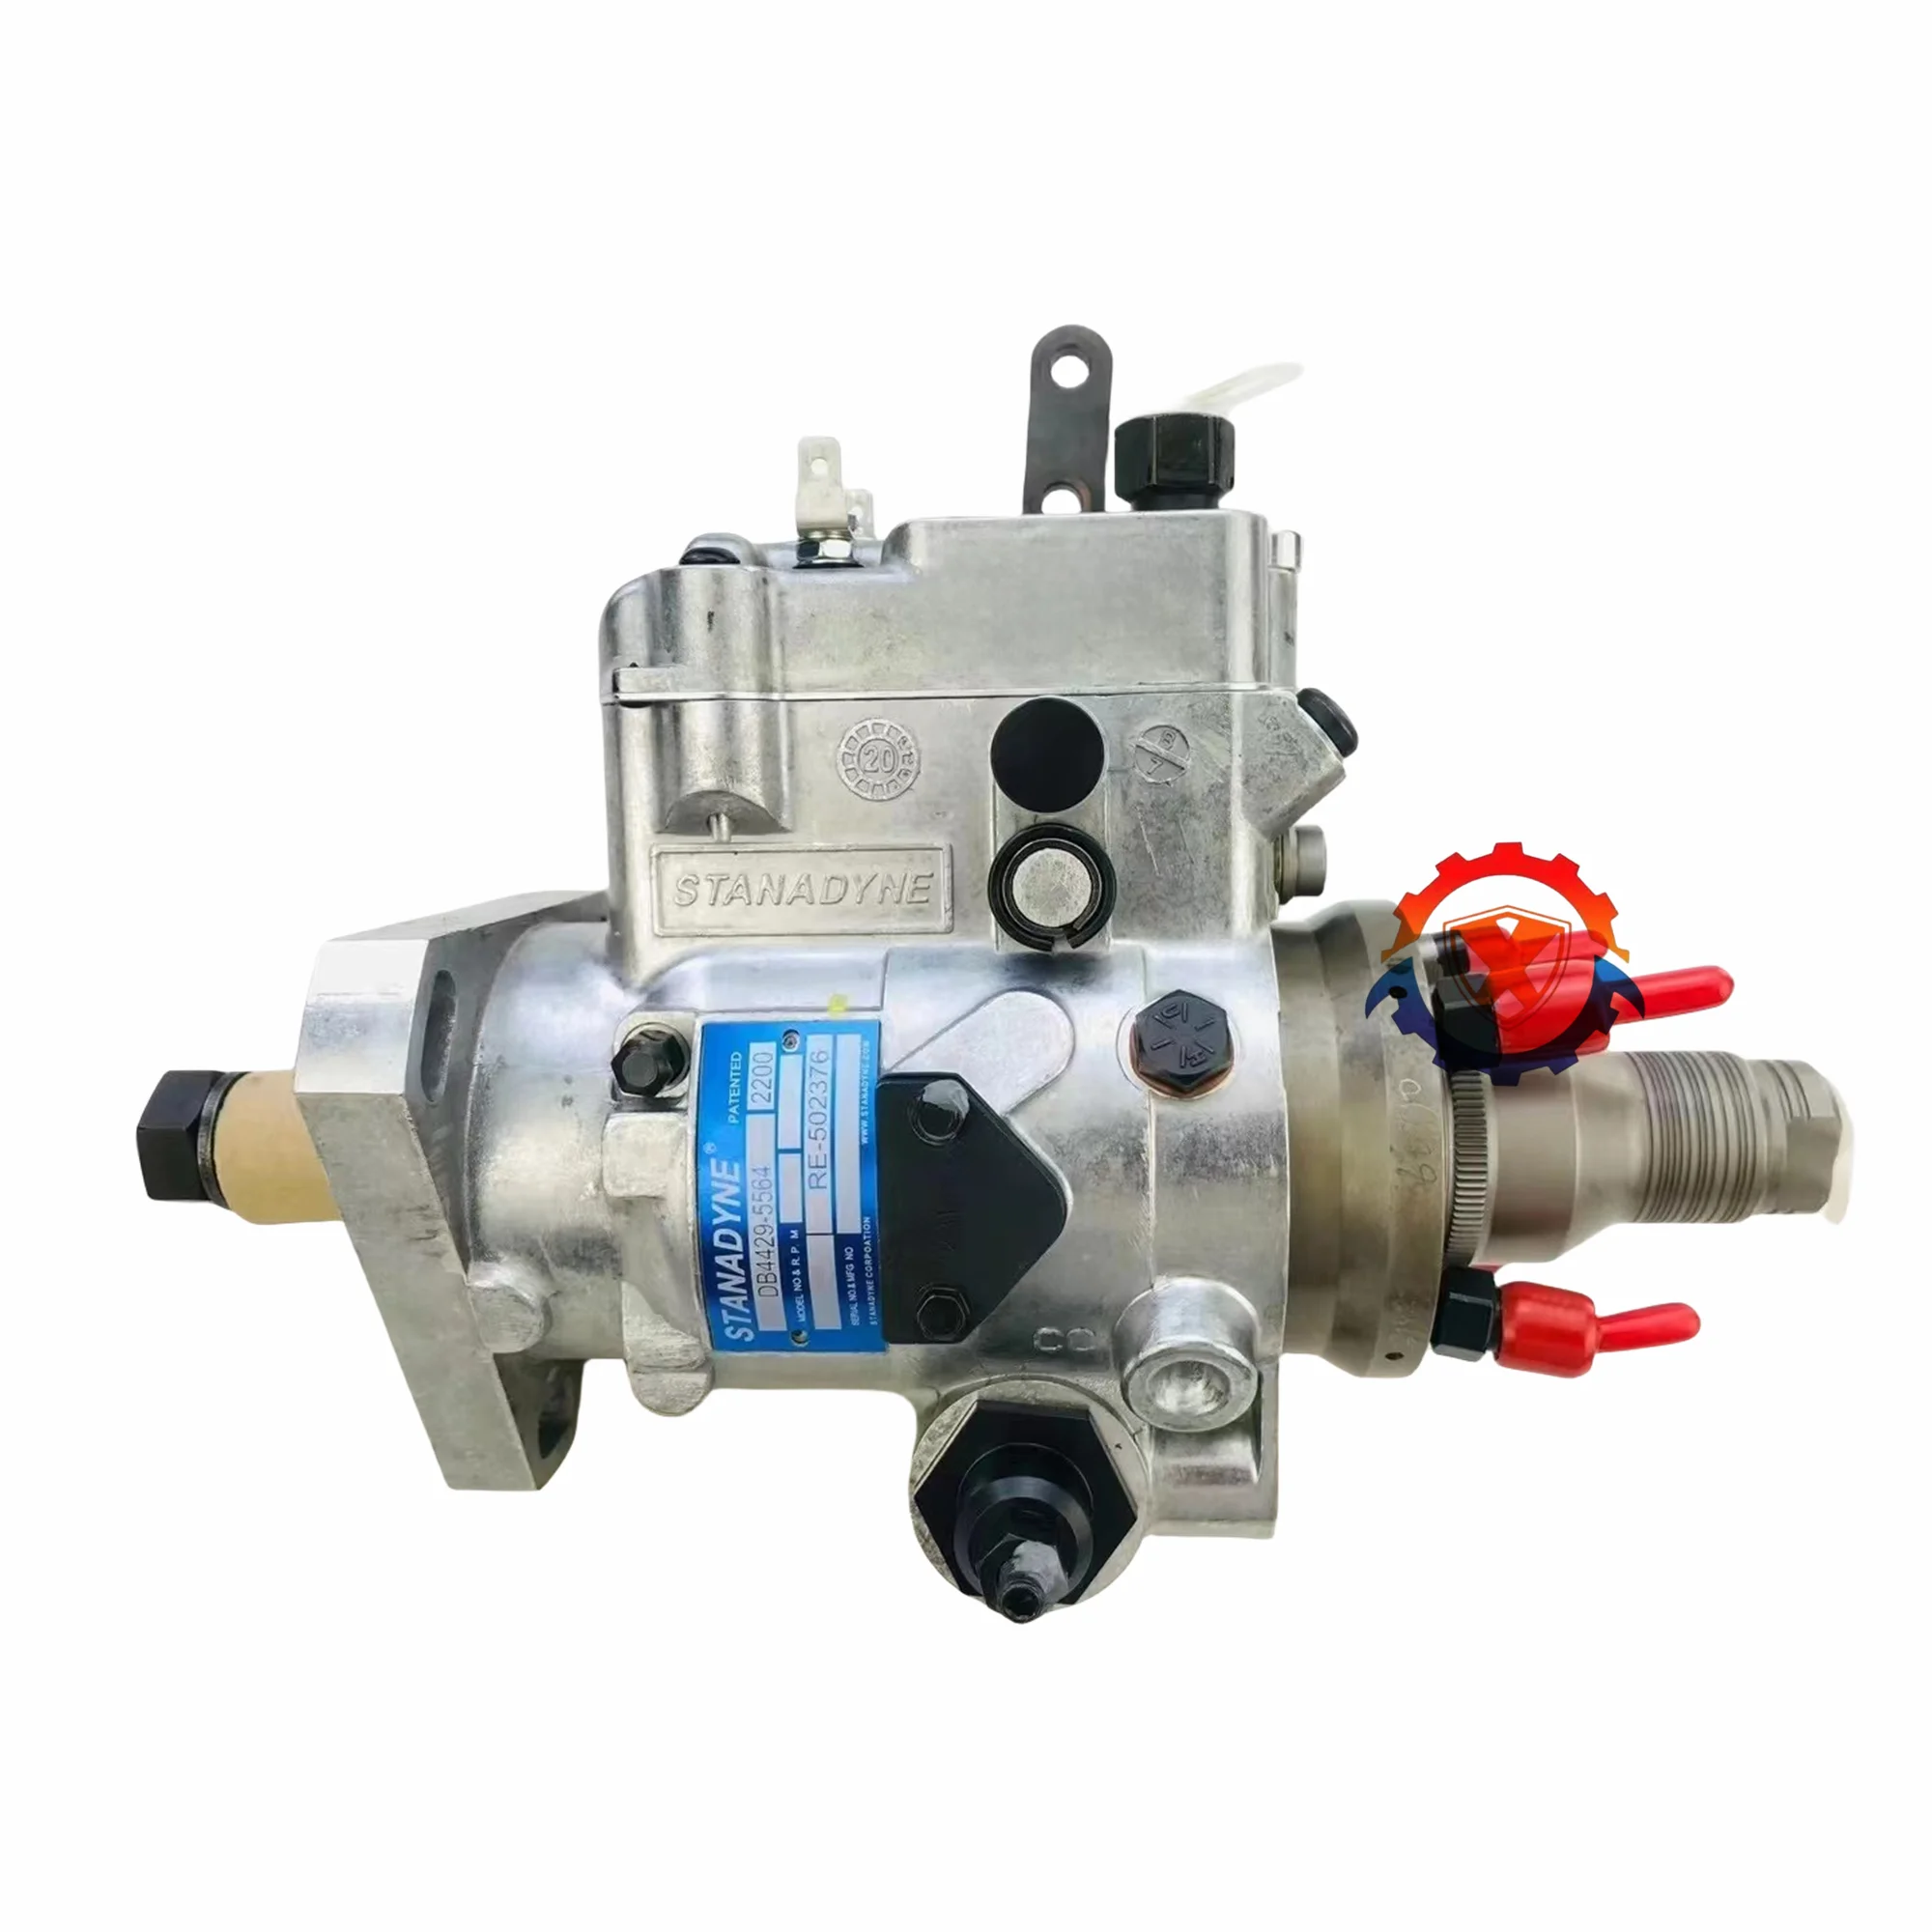 

Rebuilt Stanadyne Injection Pump DB4429-5564DR RE502376 Fits For John Deere 4045T 410 Backhoe Engine